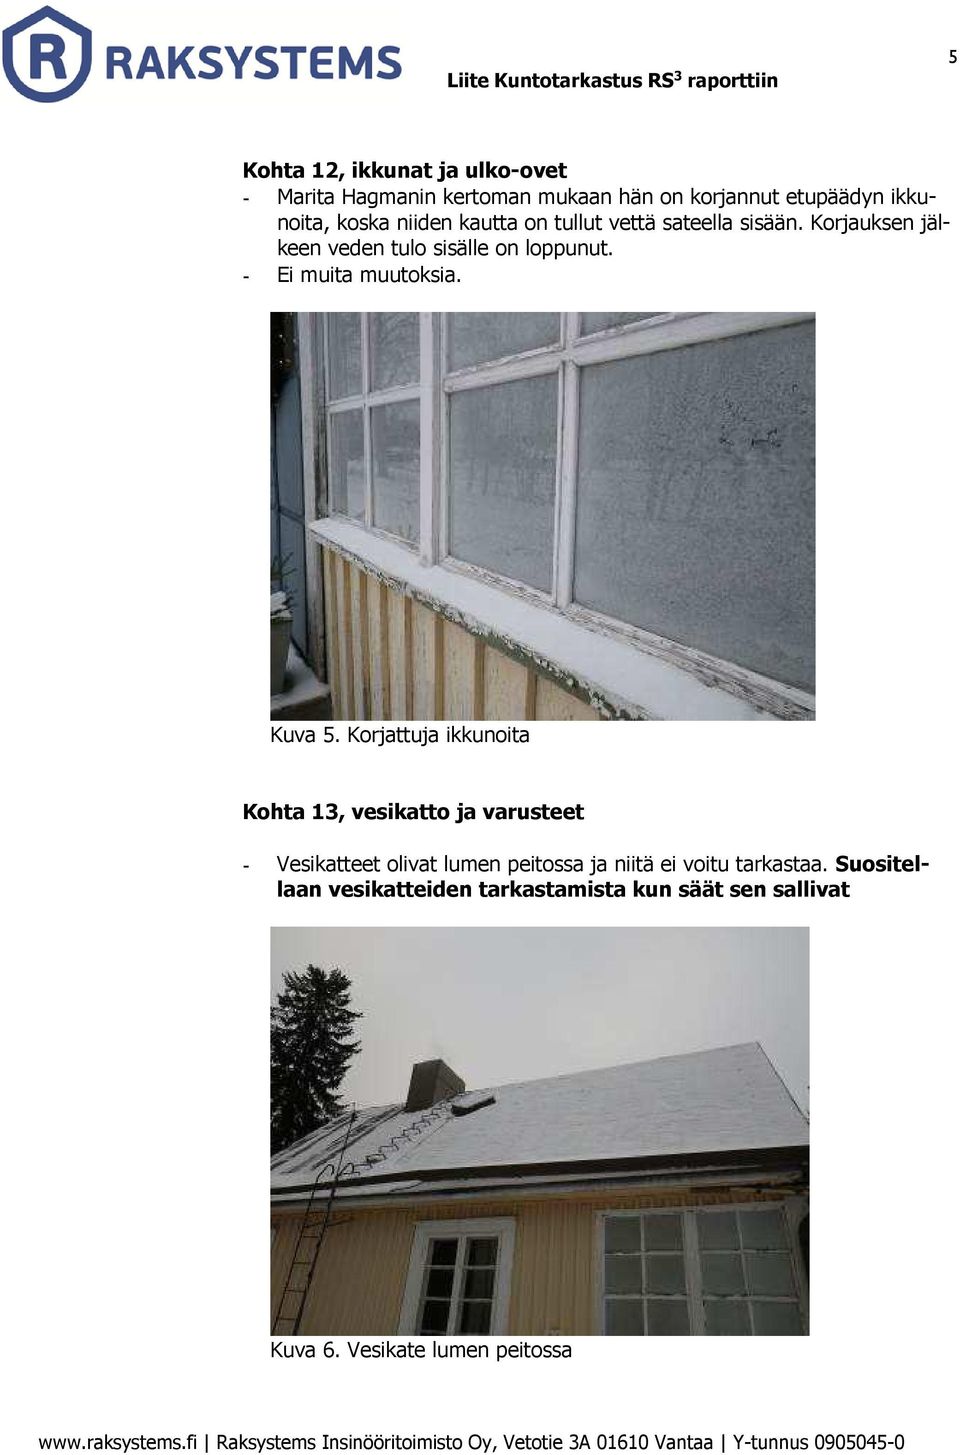 Korjattuja ikkunoita Kohta 13, vesikatto ja varusteet - Vesikatteet olivat lumen peitossa ja niitä ei voitu tarkastaa.